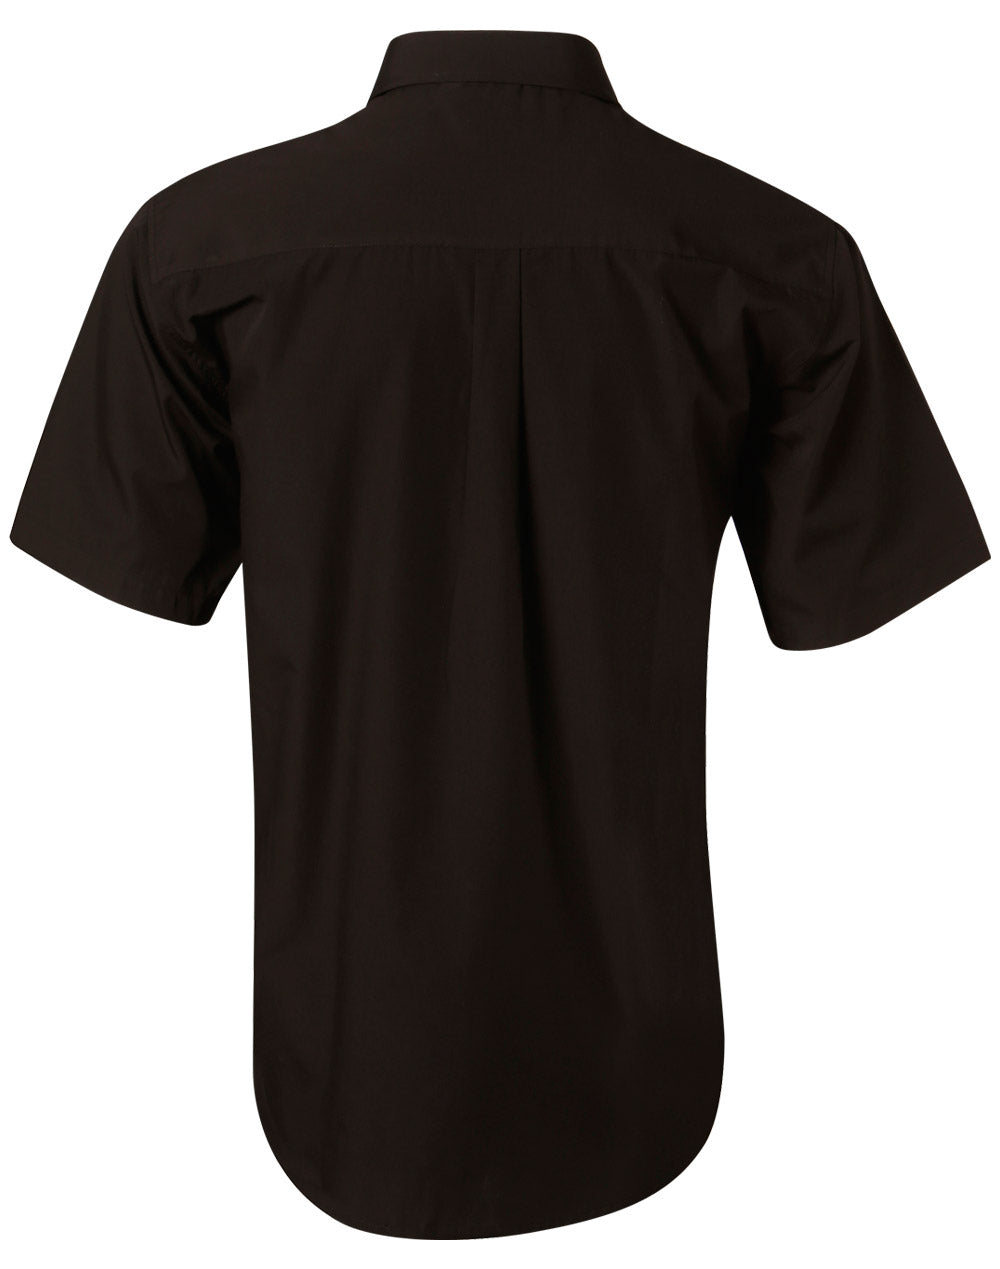 Winning Spirit-Men's Poplin Short Sleeve Business Shirt -BS01S